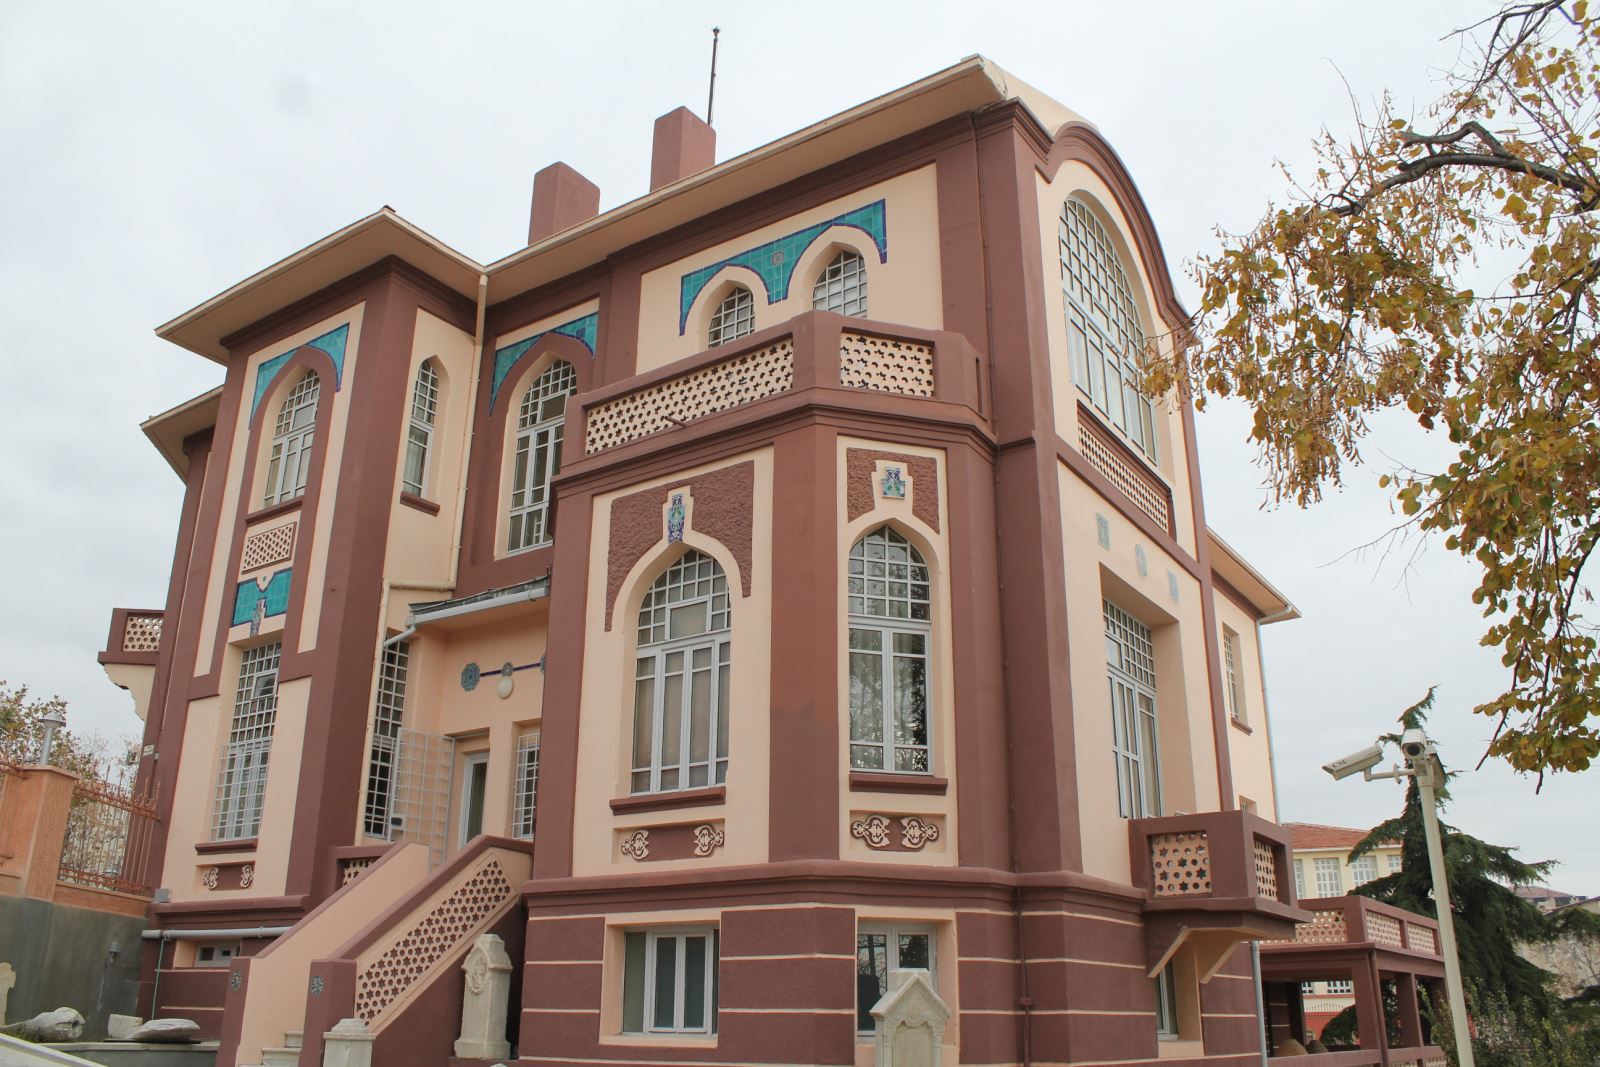 泰基尔达考古和民族学博物馆 – Tekirdağ Arkeoloji ve Etnografya Müzesi